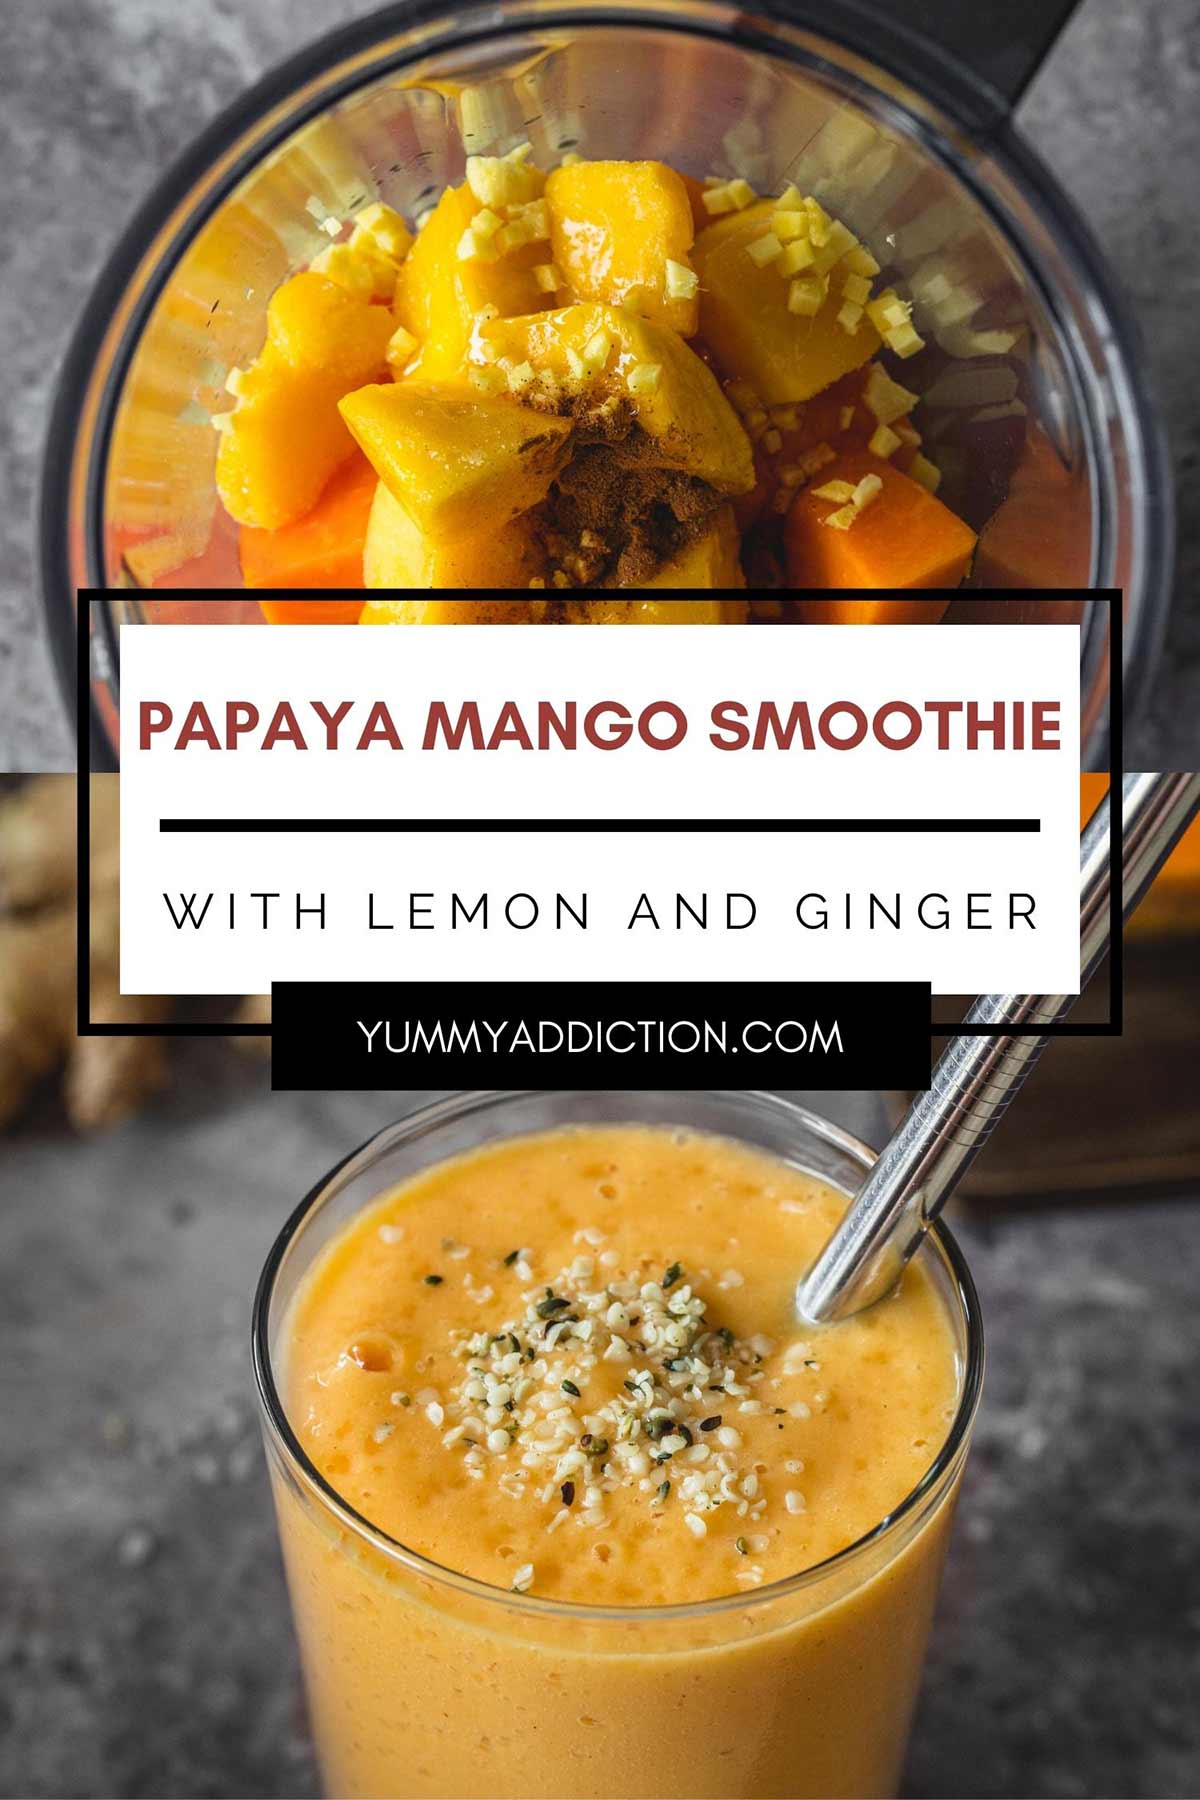 Papaya Mango Smoothie with Lemon and Ginger - Yummy Addiction